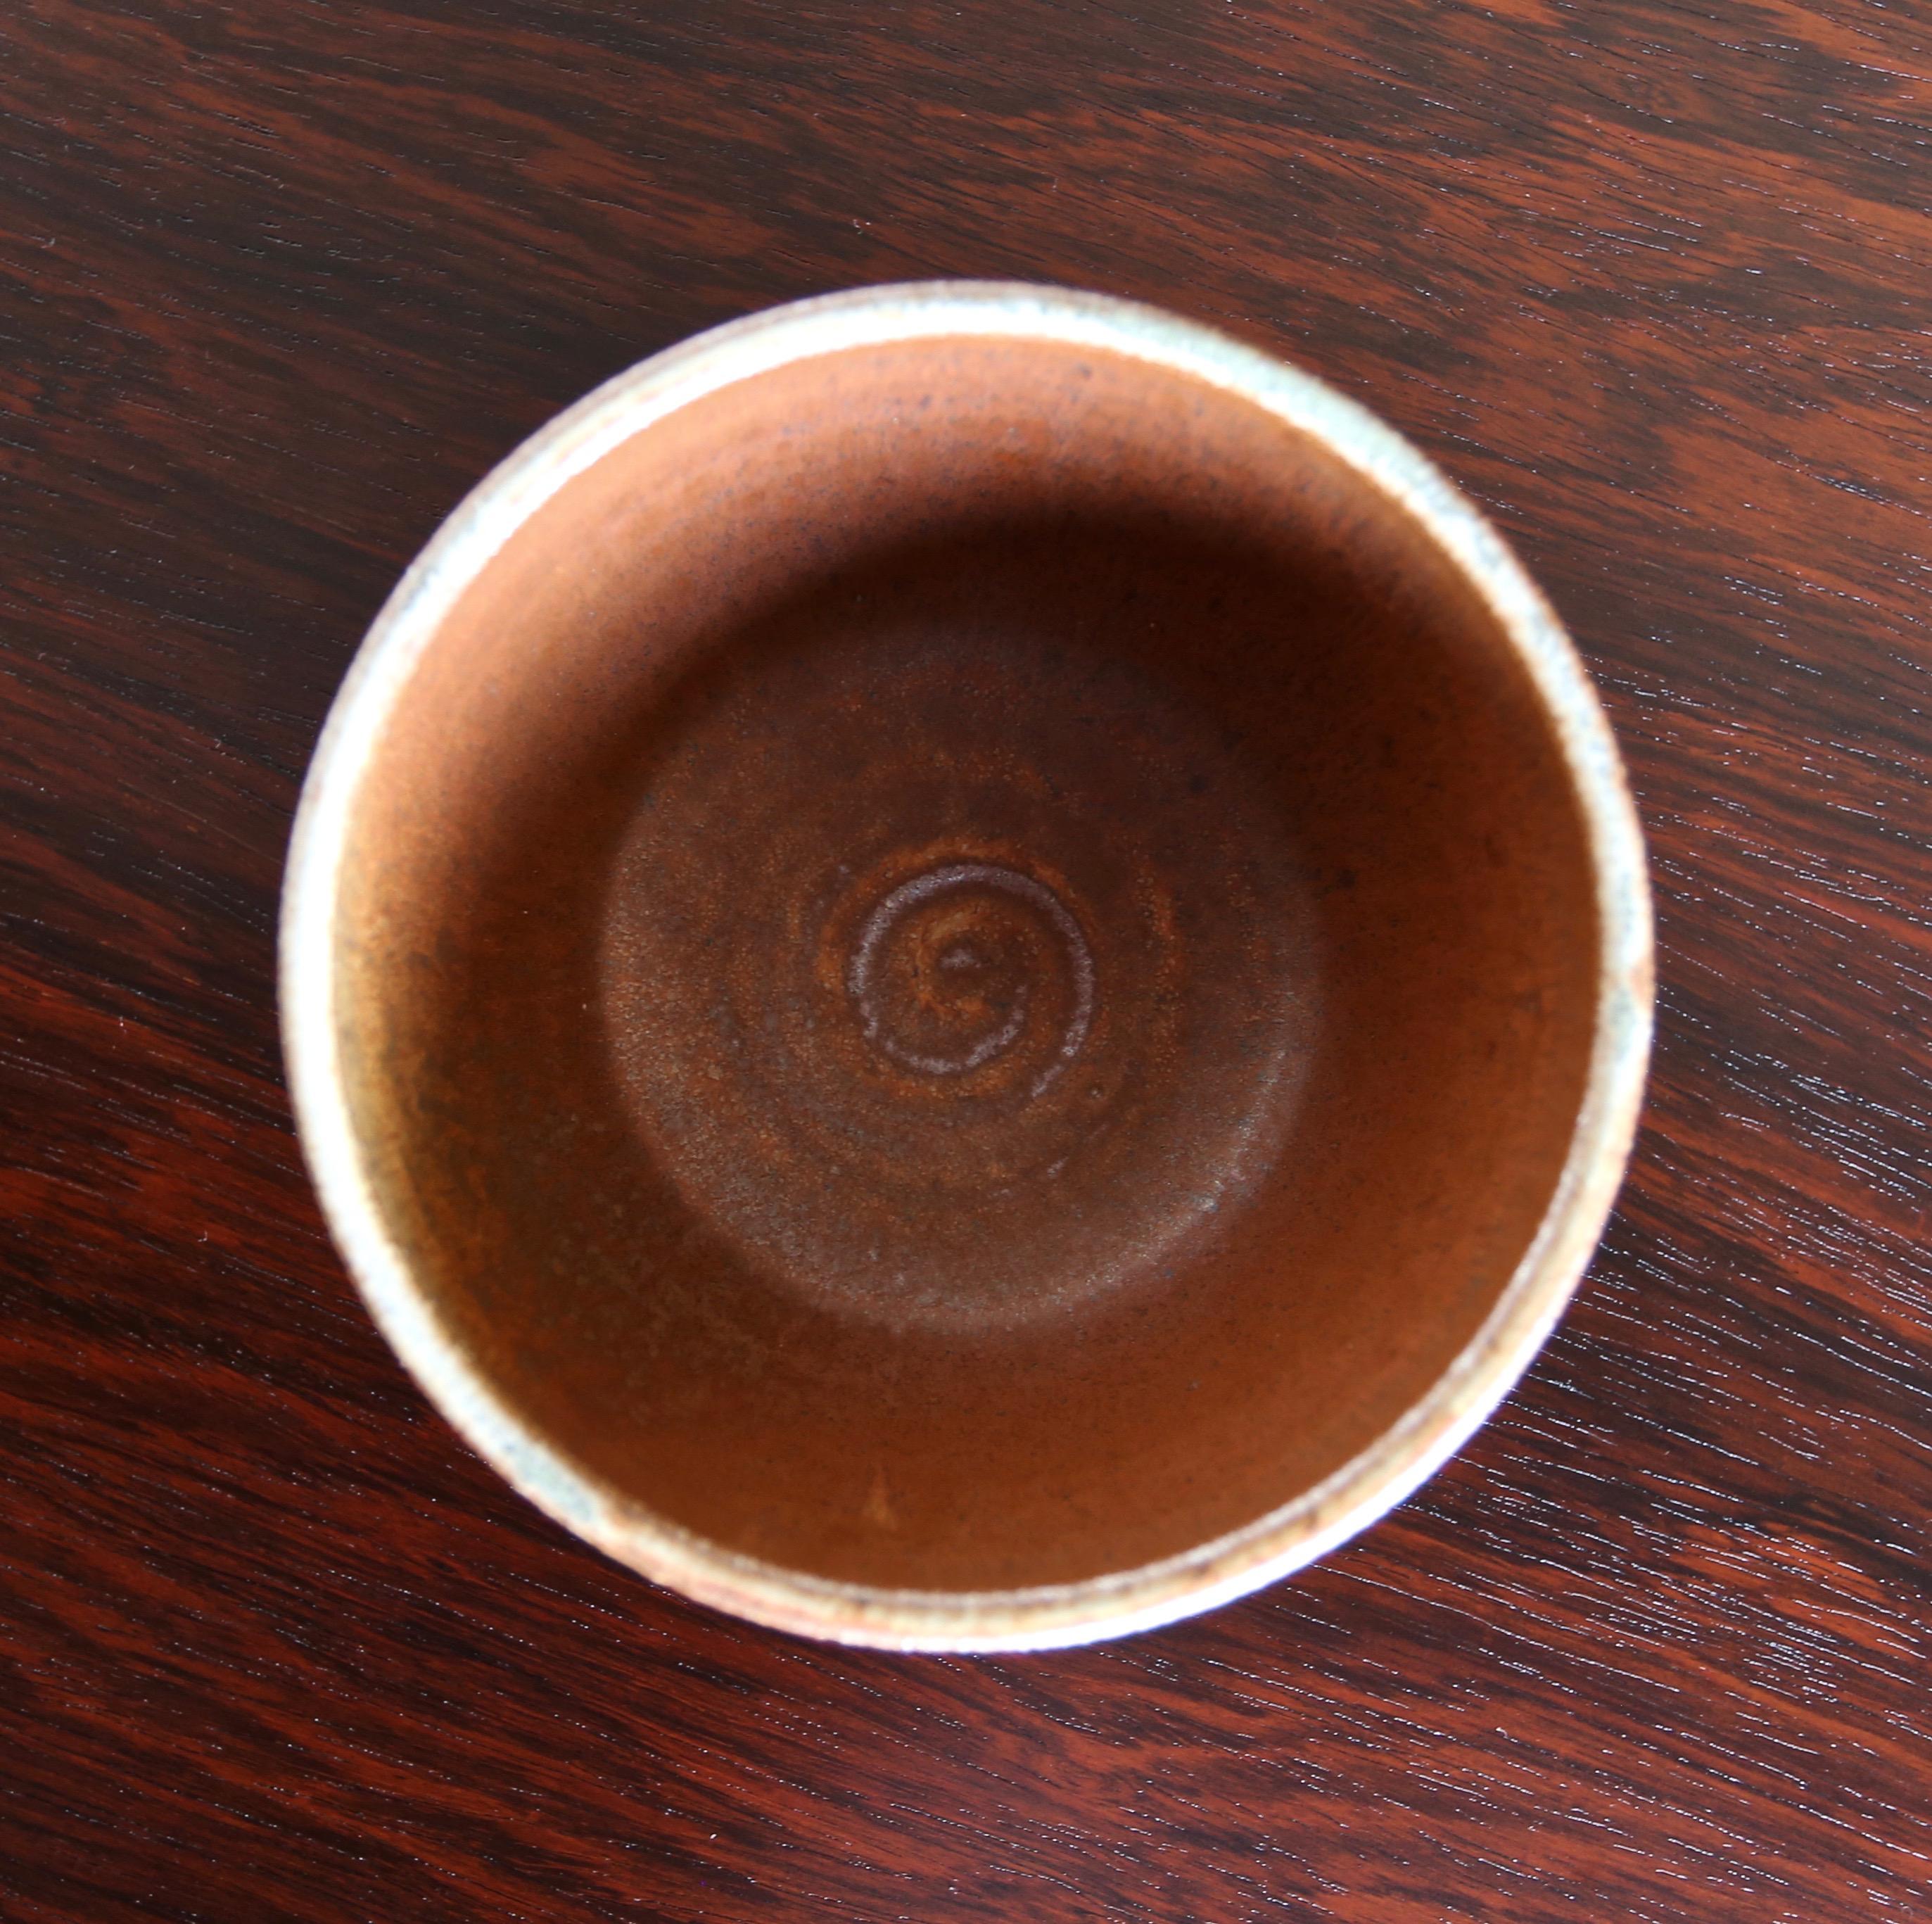 Organic Modern Tim Keenan Ceramic Bowl